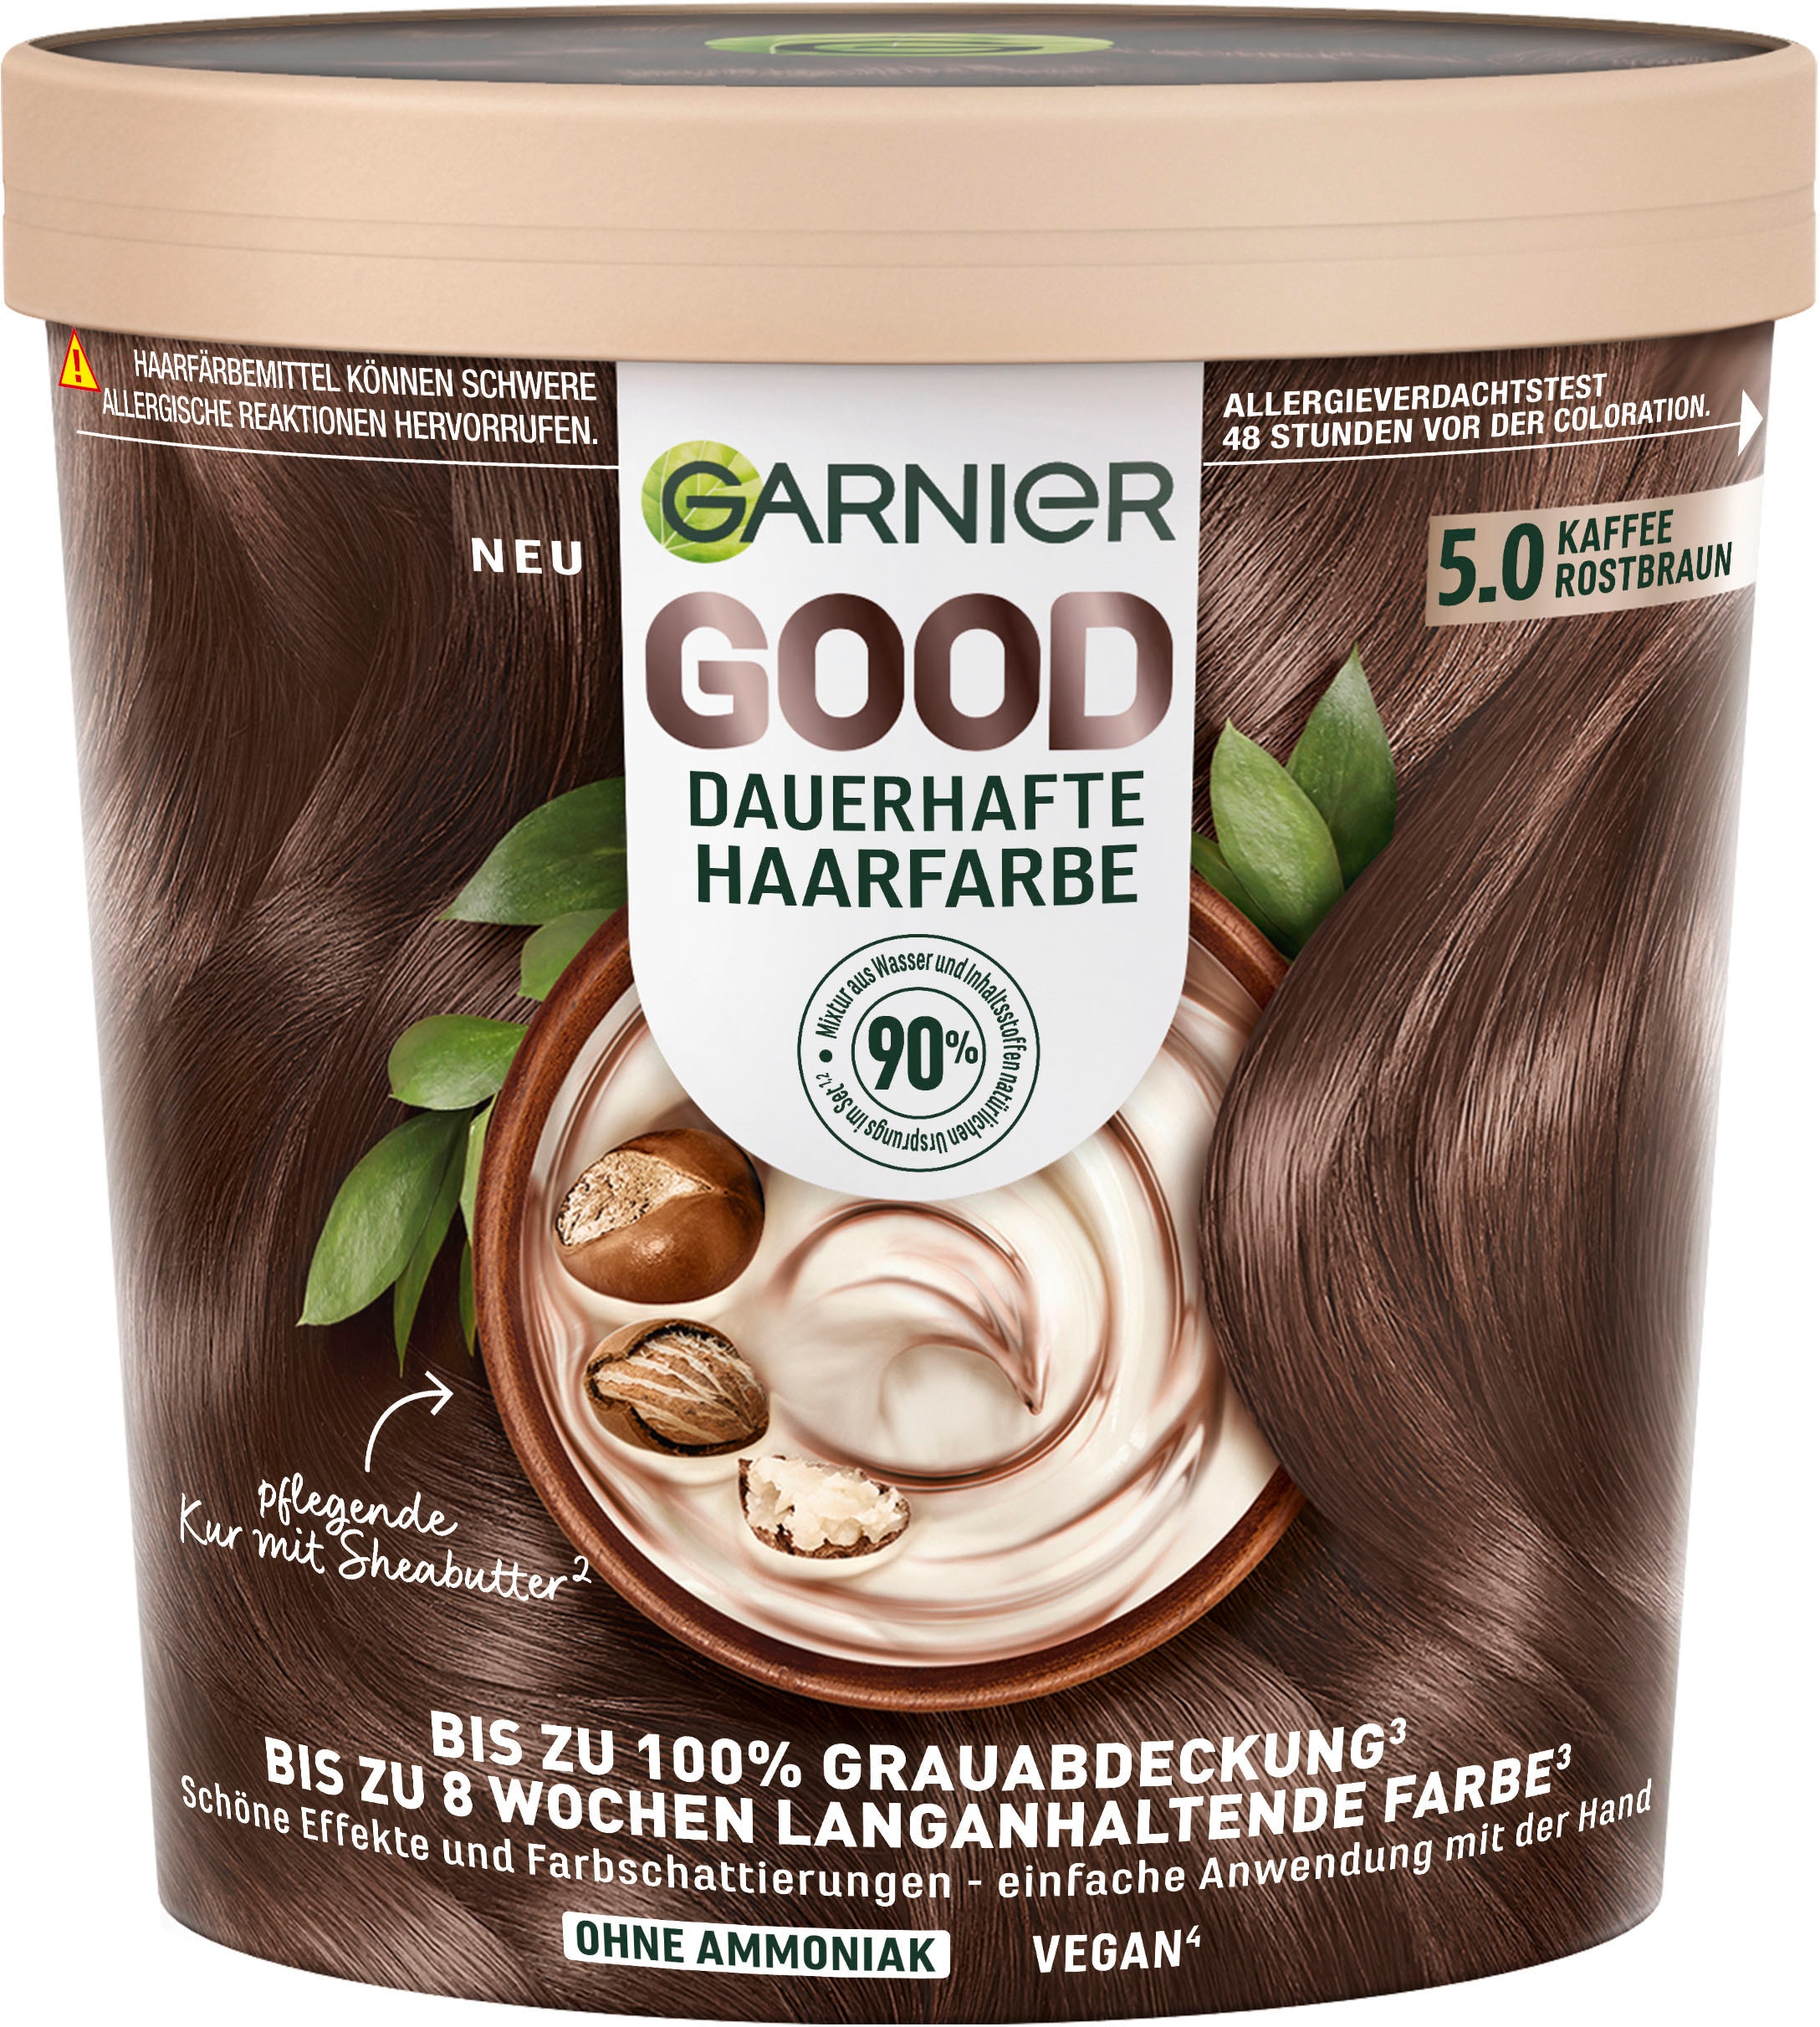 GARNIER Coloration »Garnier GOOD Dauerhafte Haarfarbe« im OTTO Online Shop